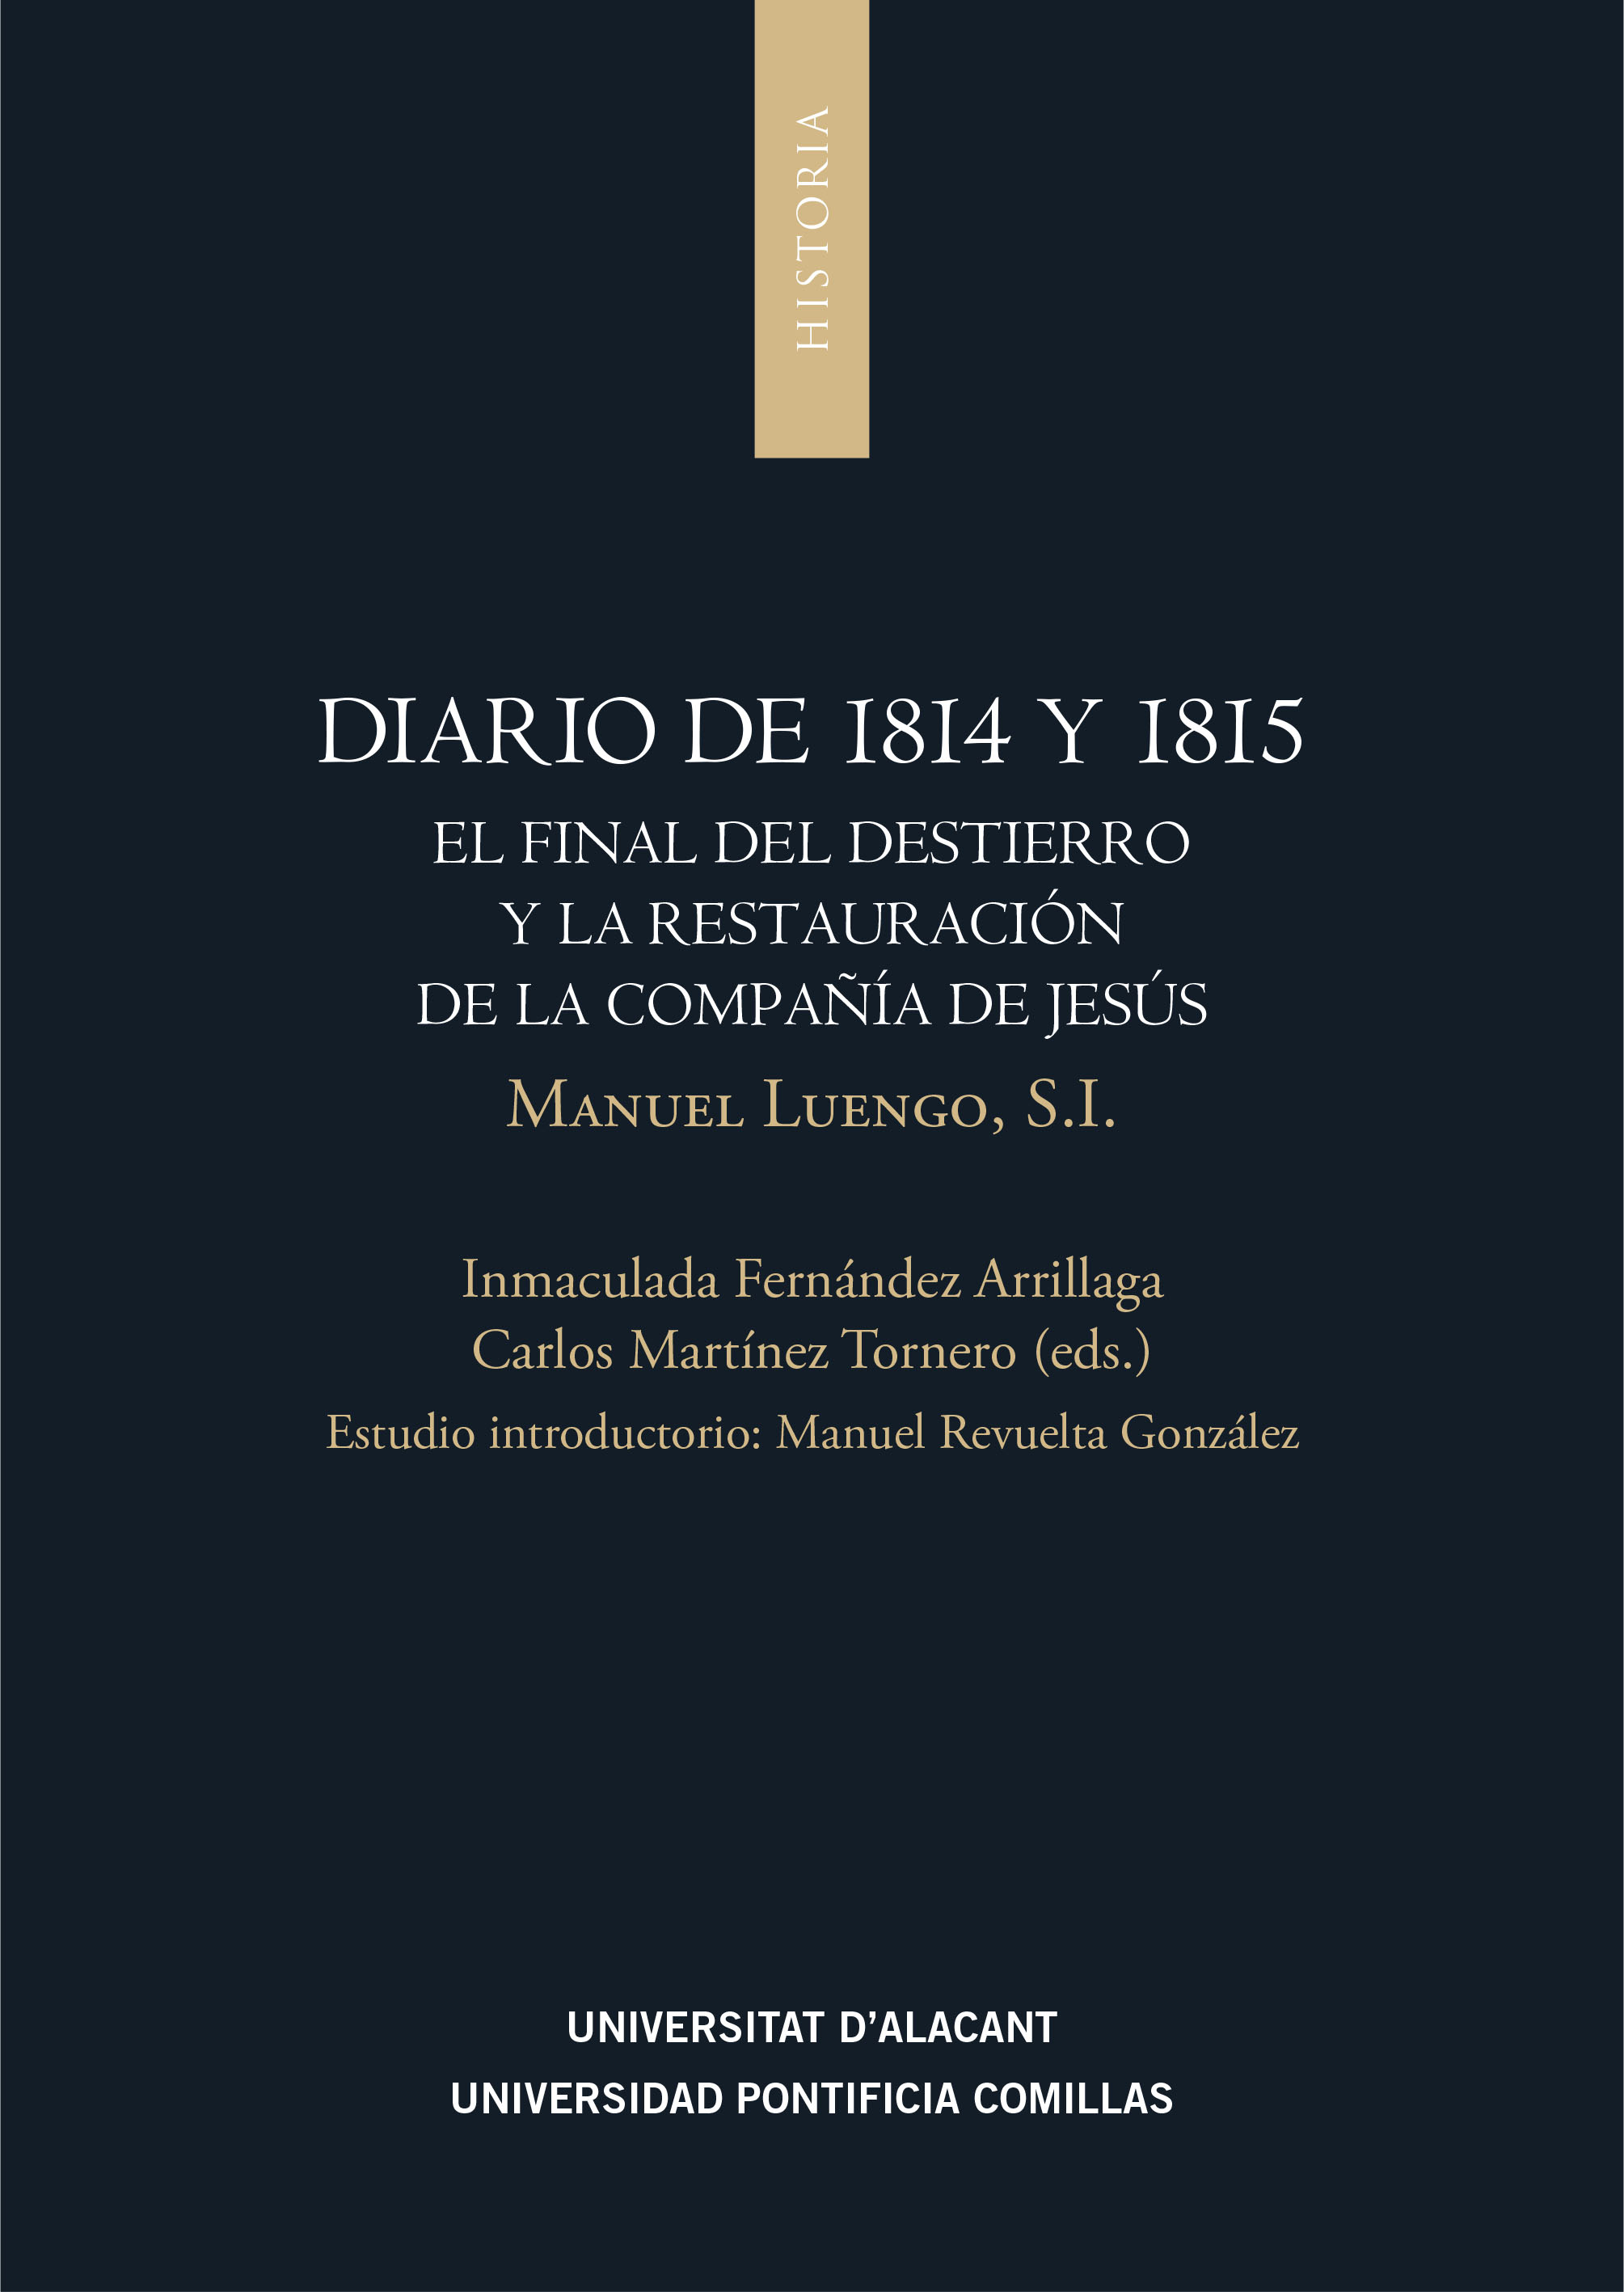 Diario de 1814 y 1815